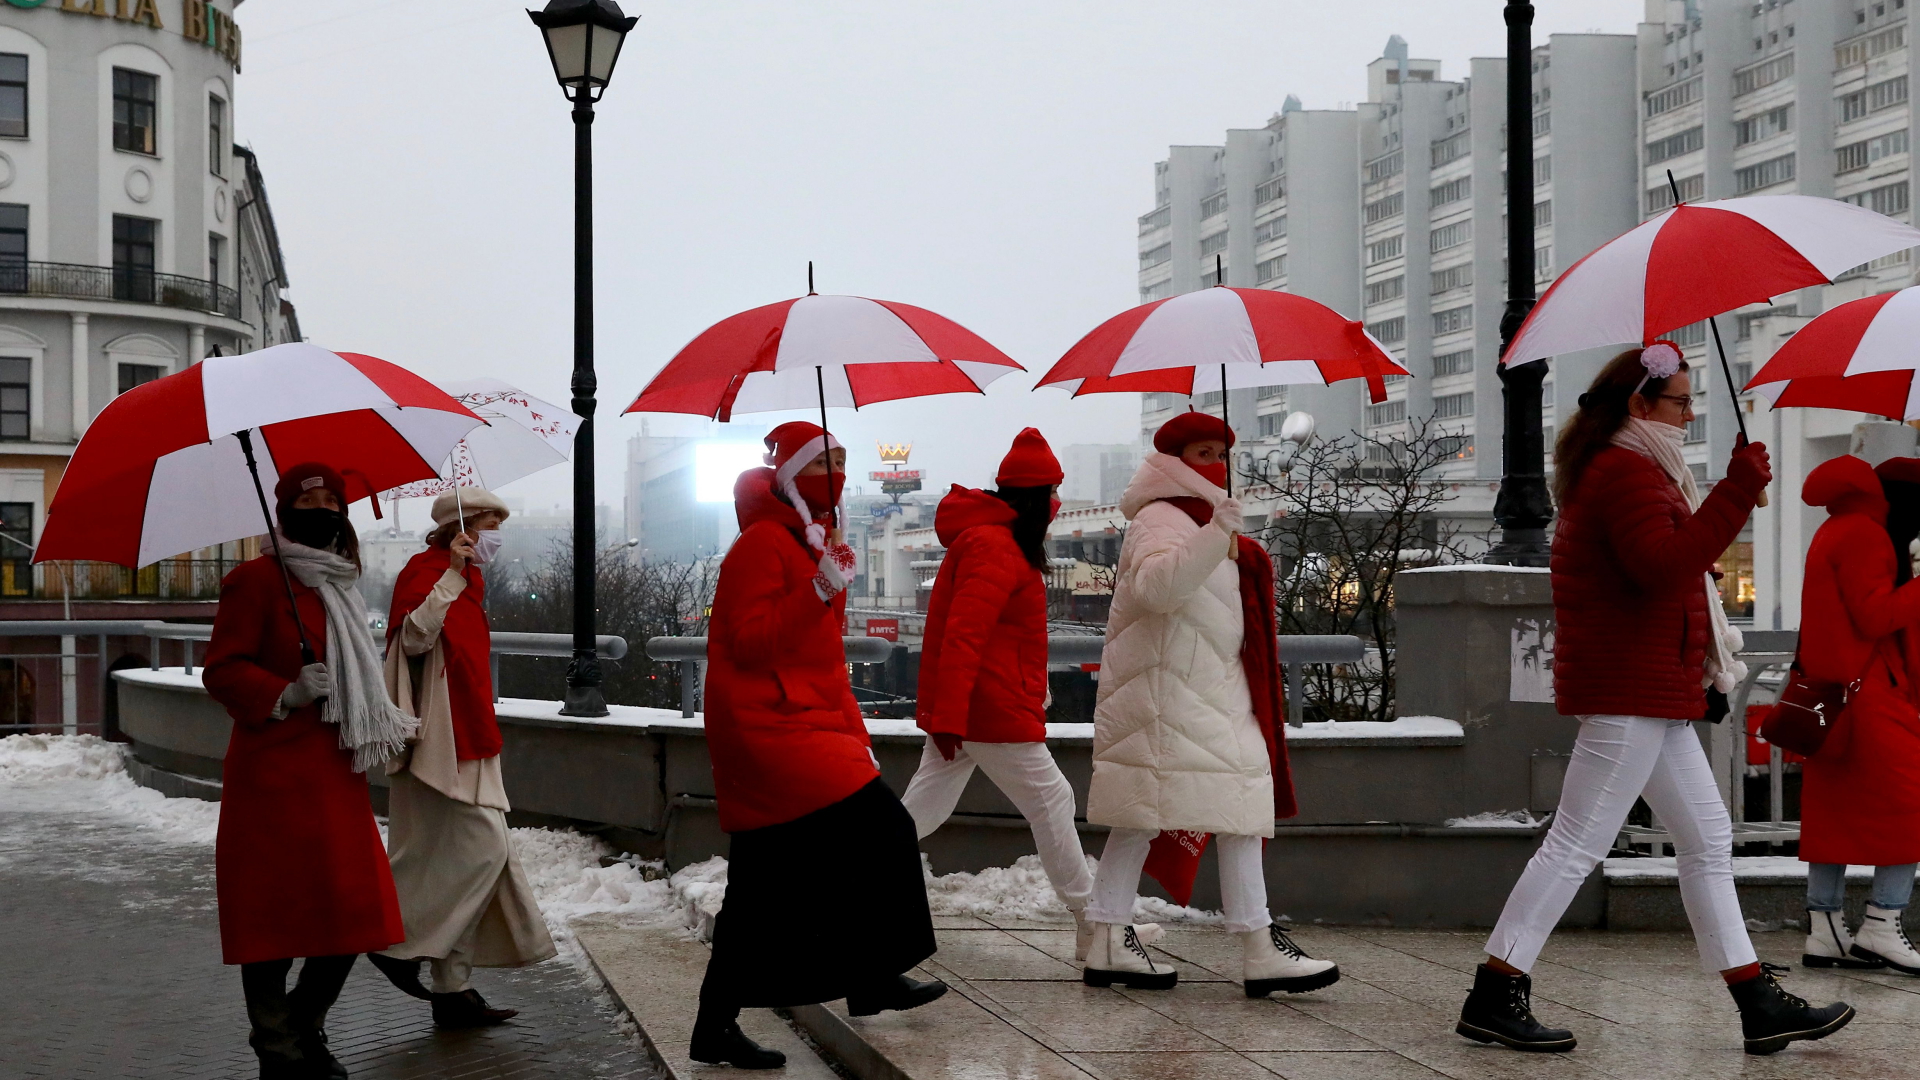 Frauen gehen mit Regenschirmen und Kleidung in den Farben der Opposition, Weiß und Rot, durch die Straßen von Minsk (Foto vom 16.12.2020). | STR/EPA-EFE/Shutterstock